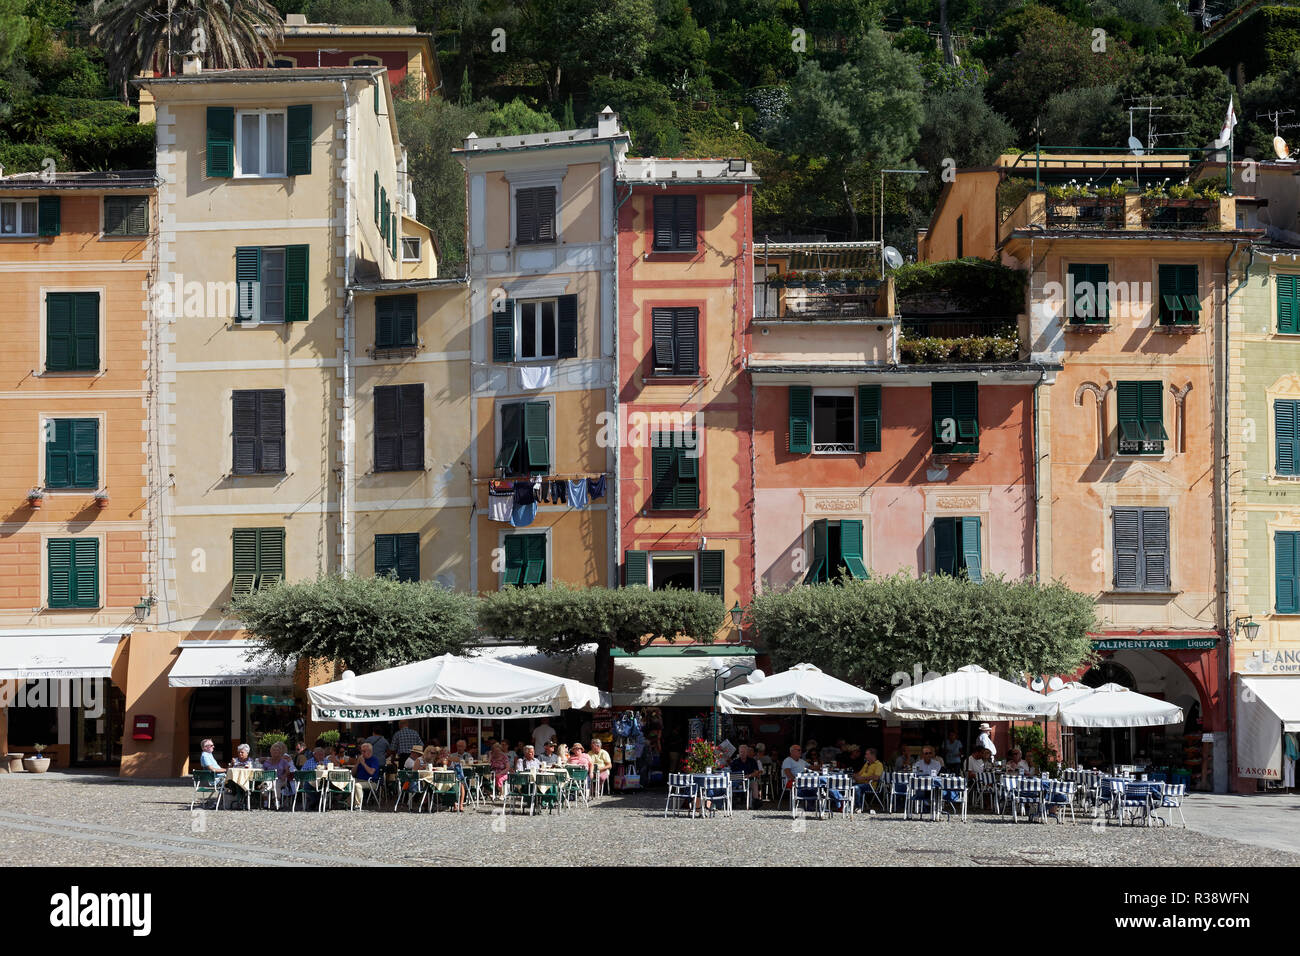 Café en terrasses et maisons colorées, Portofino, Golfo Paradiso, Province de Gênes, Riviera di Levante, ligurie, italie Banque D'Images